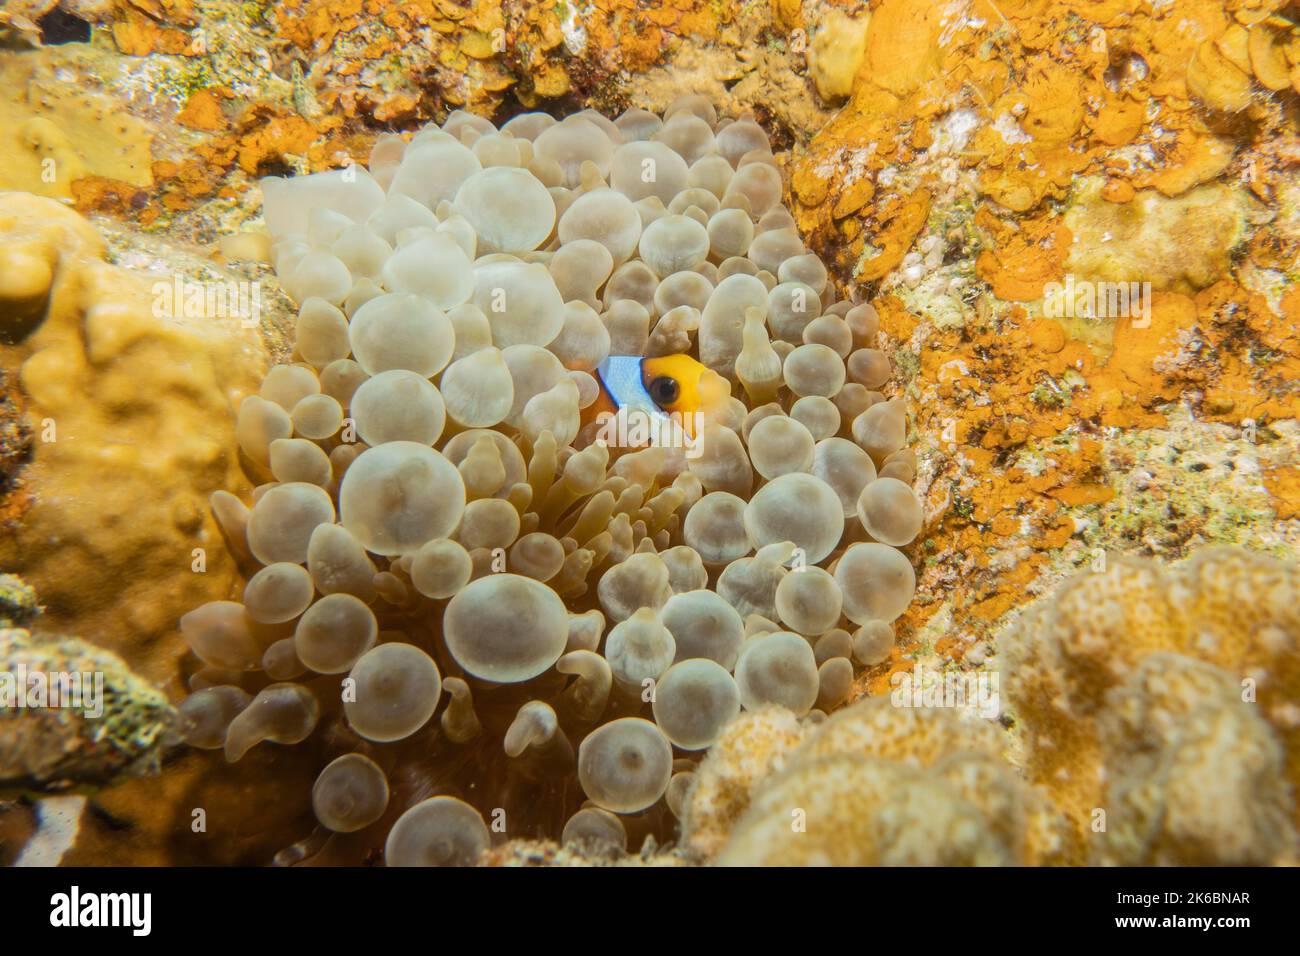 Récif de corail et plantes aquatiques dans la mer Rouge, Eilat Israël Banque D'Images